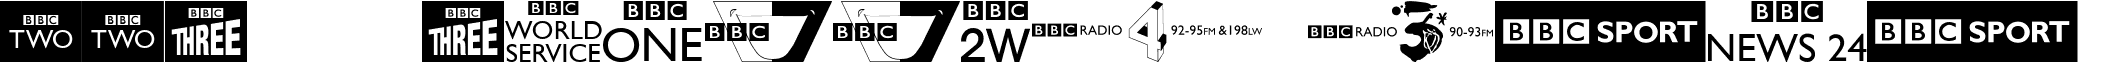 BBC TV Channel Logos font - BBC TV Channel Logos.ttf